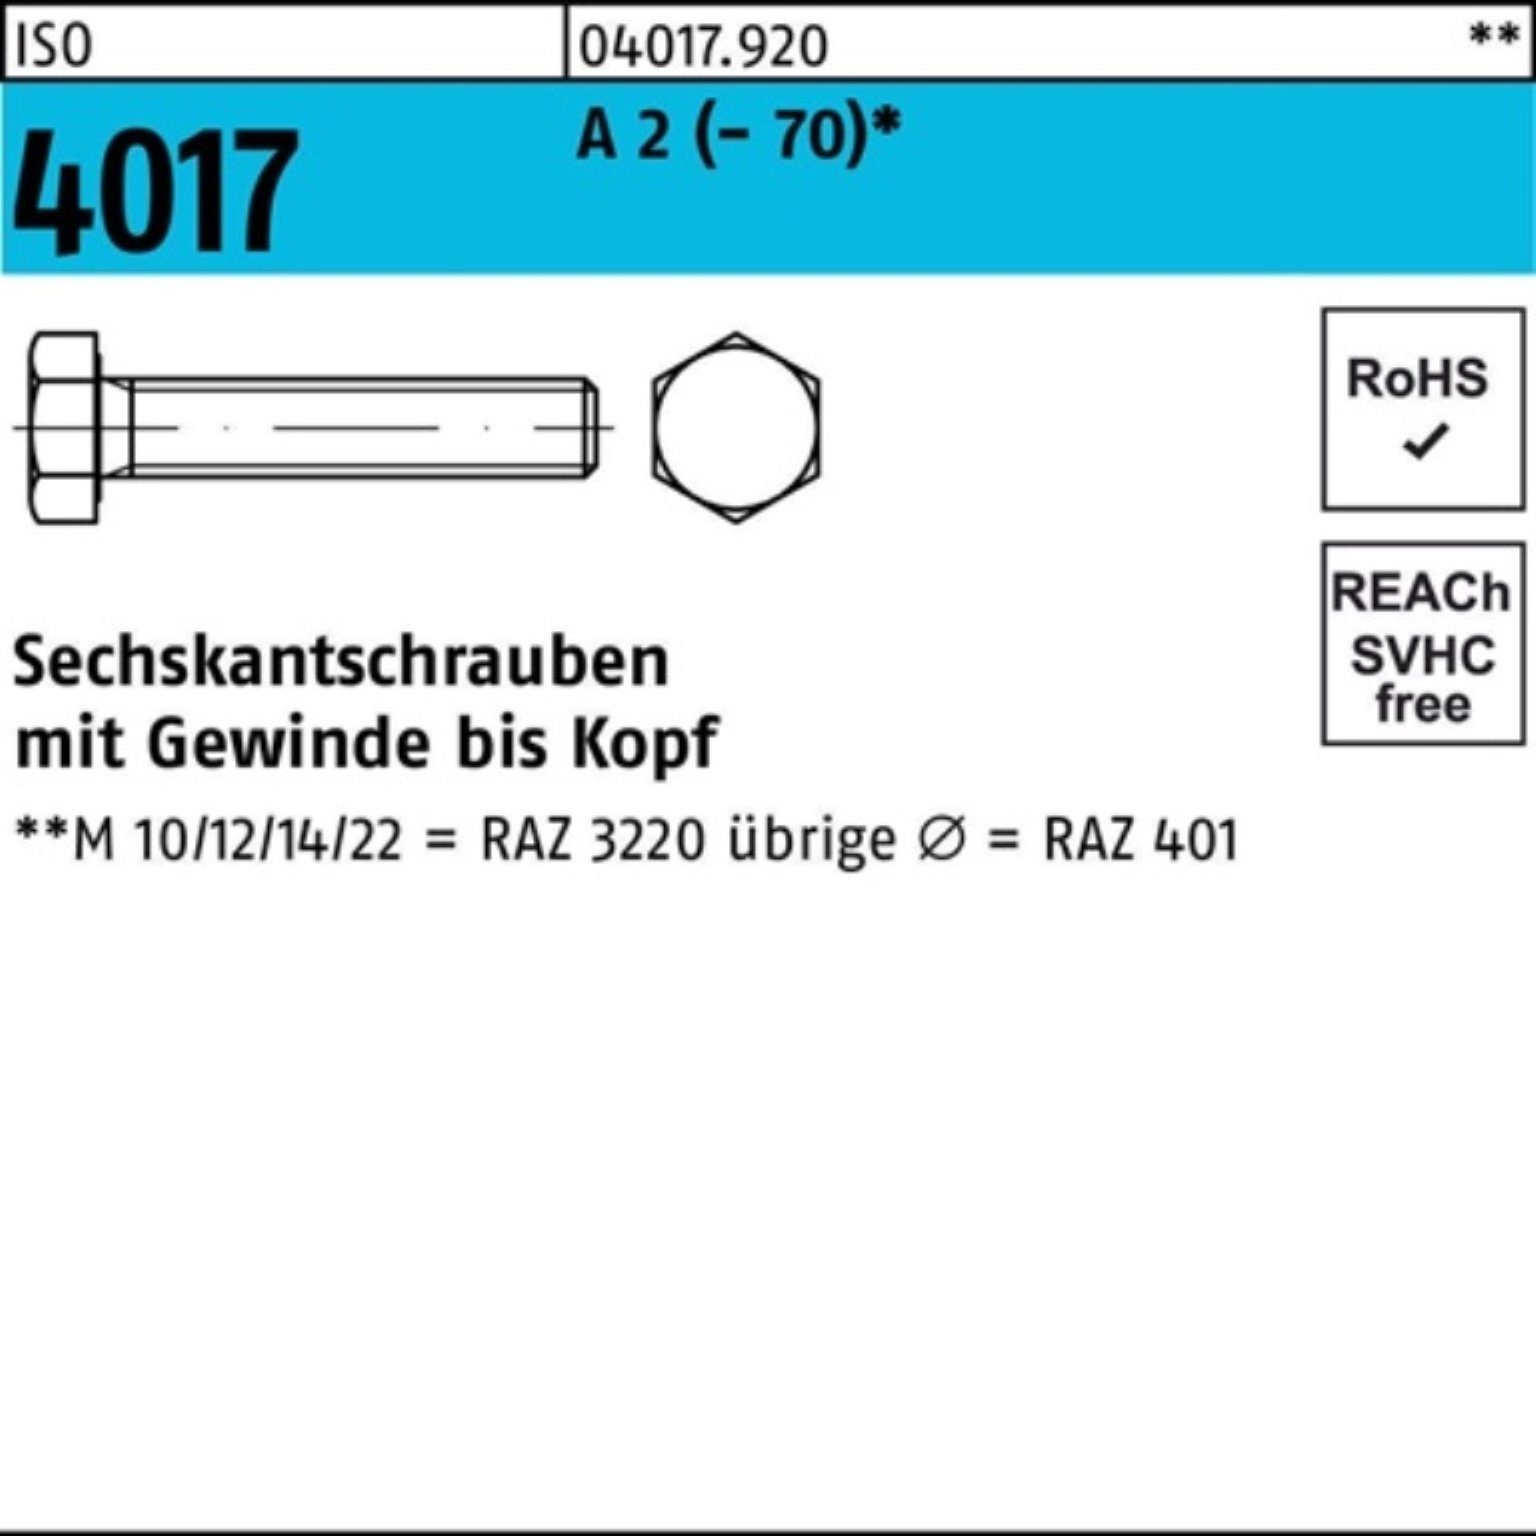 VG A Sechskantschraube 2 (70) 120 M6x ISO 100er Stück 100 Sechskantschraube Bufab 4017 Pack